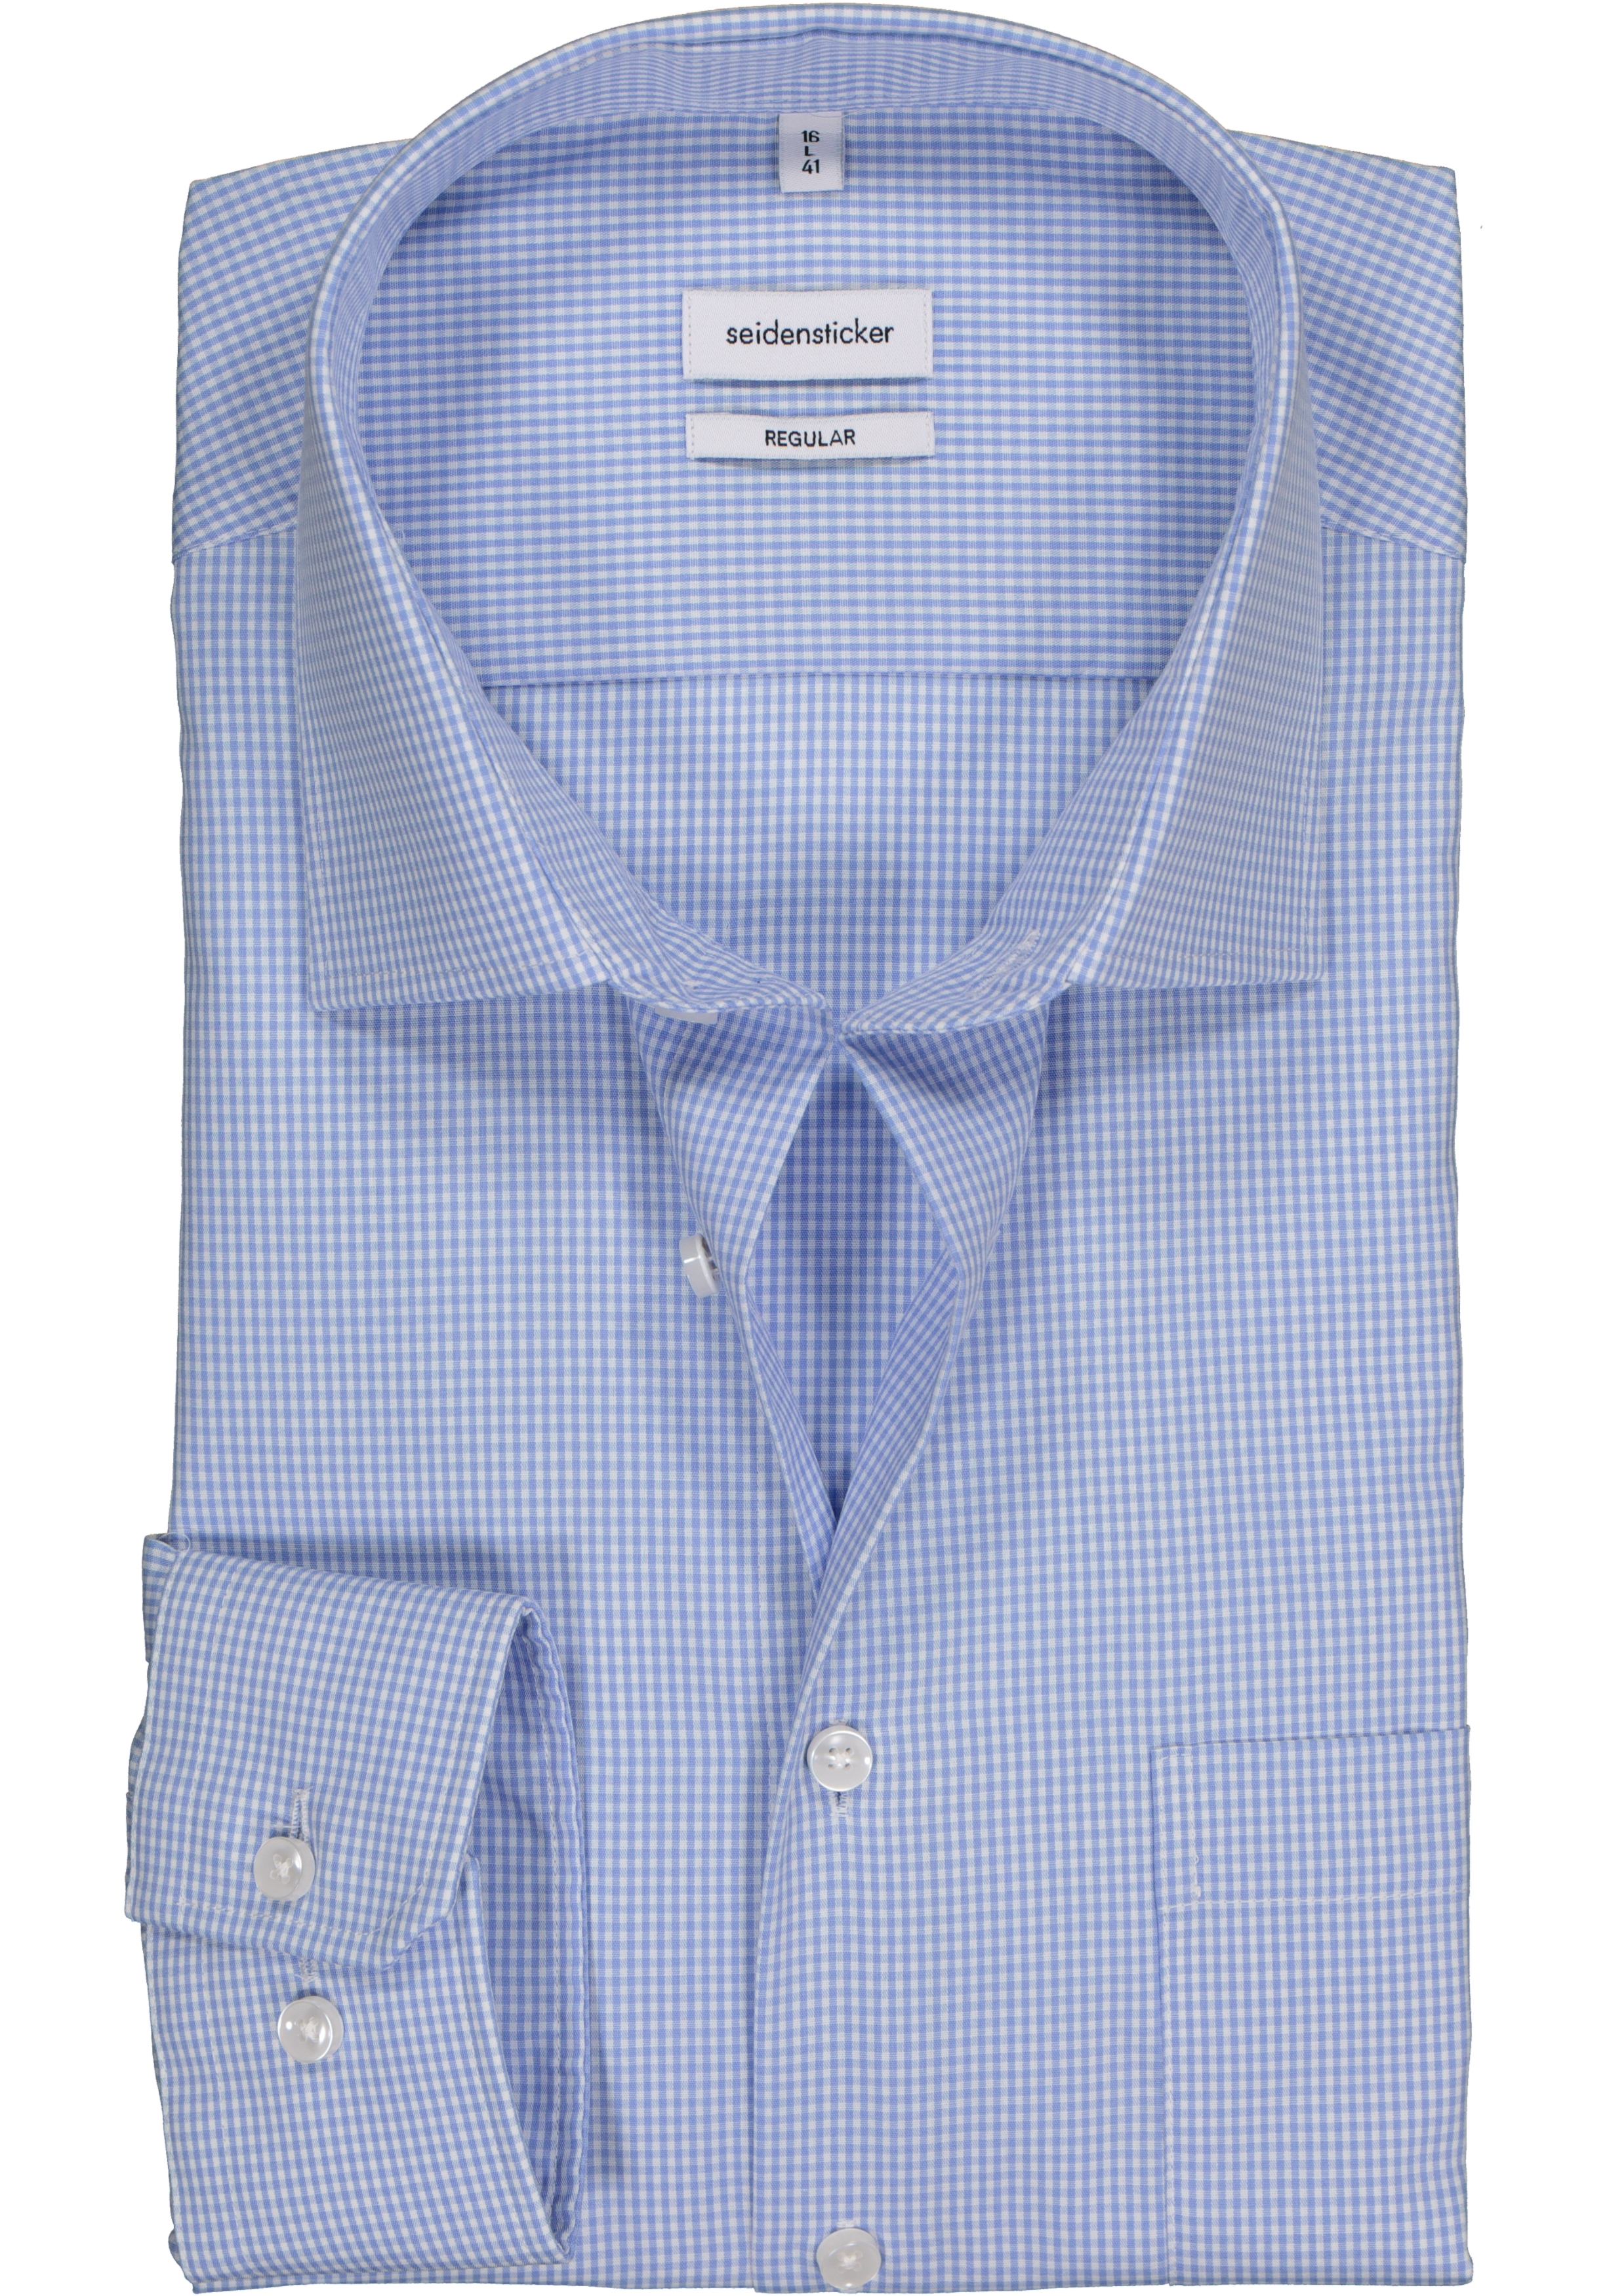 Seidensticker regular fit overhemd, lichtblauw met wit geruit